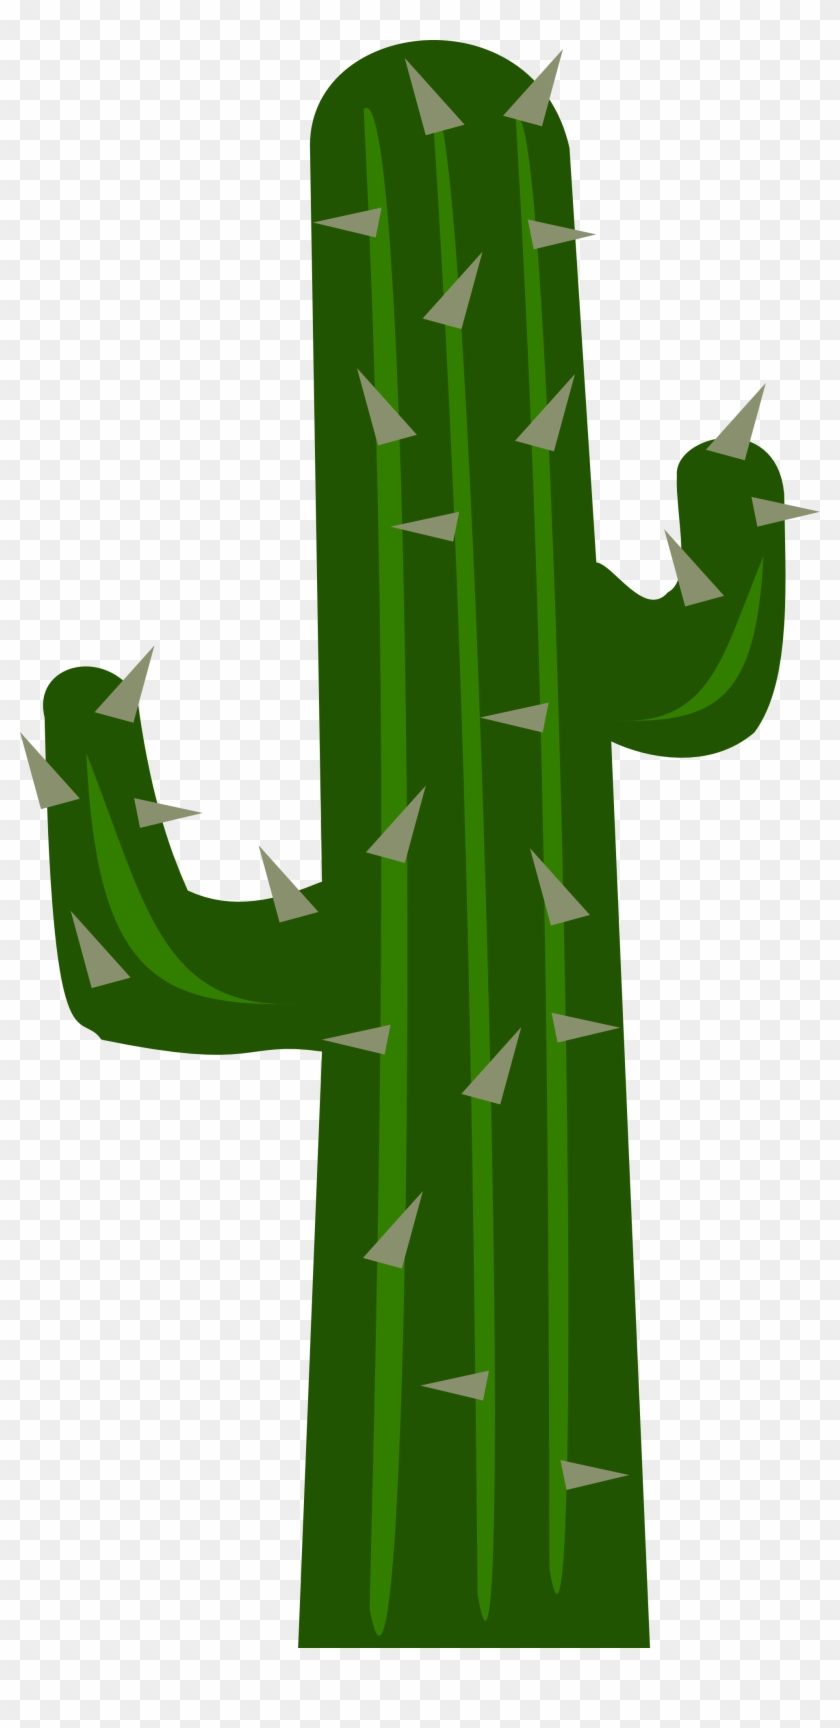 Big Image - Cactus Png #153298